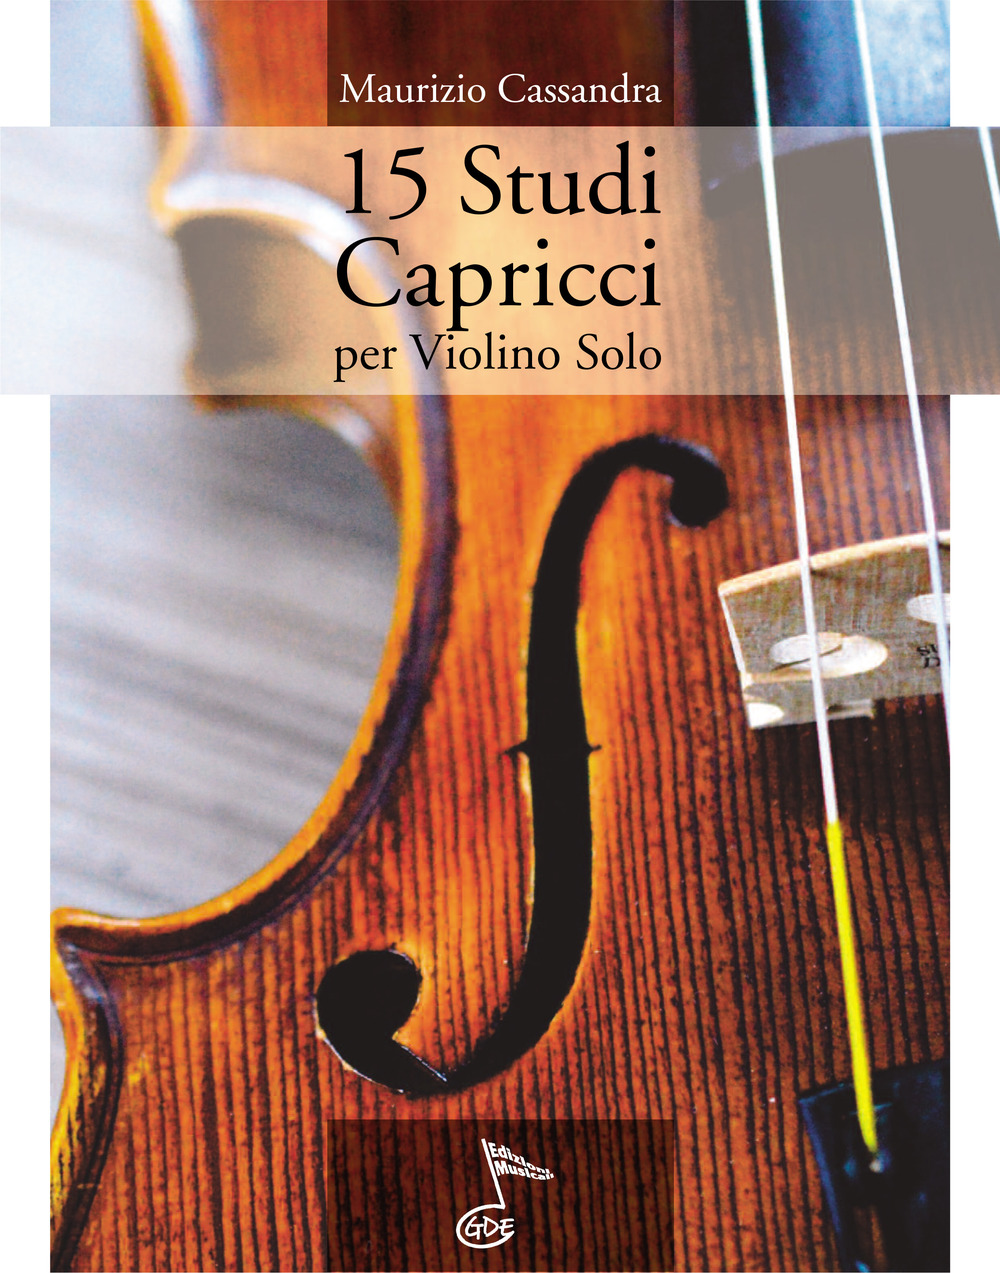 15 studi capricci. Per violino solo